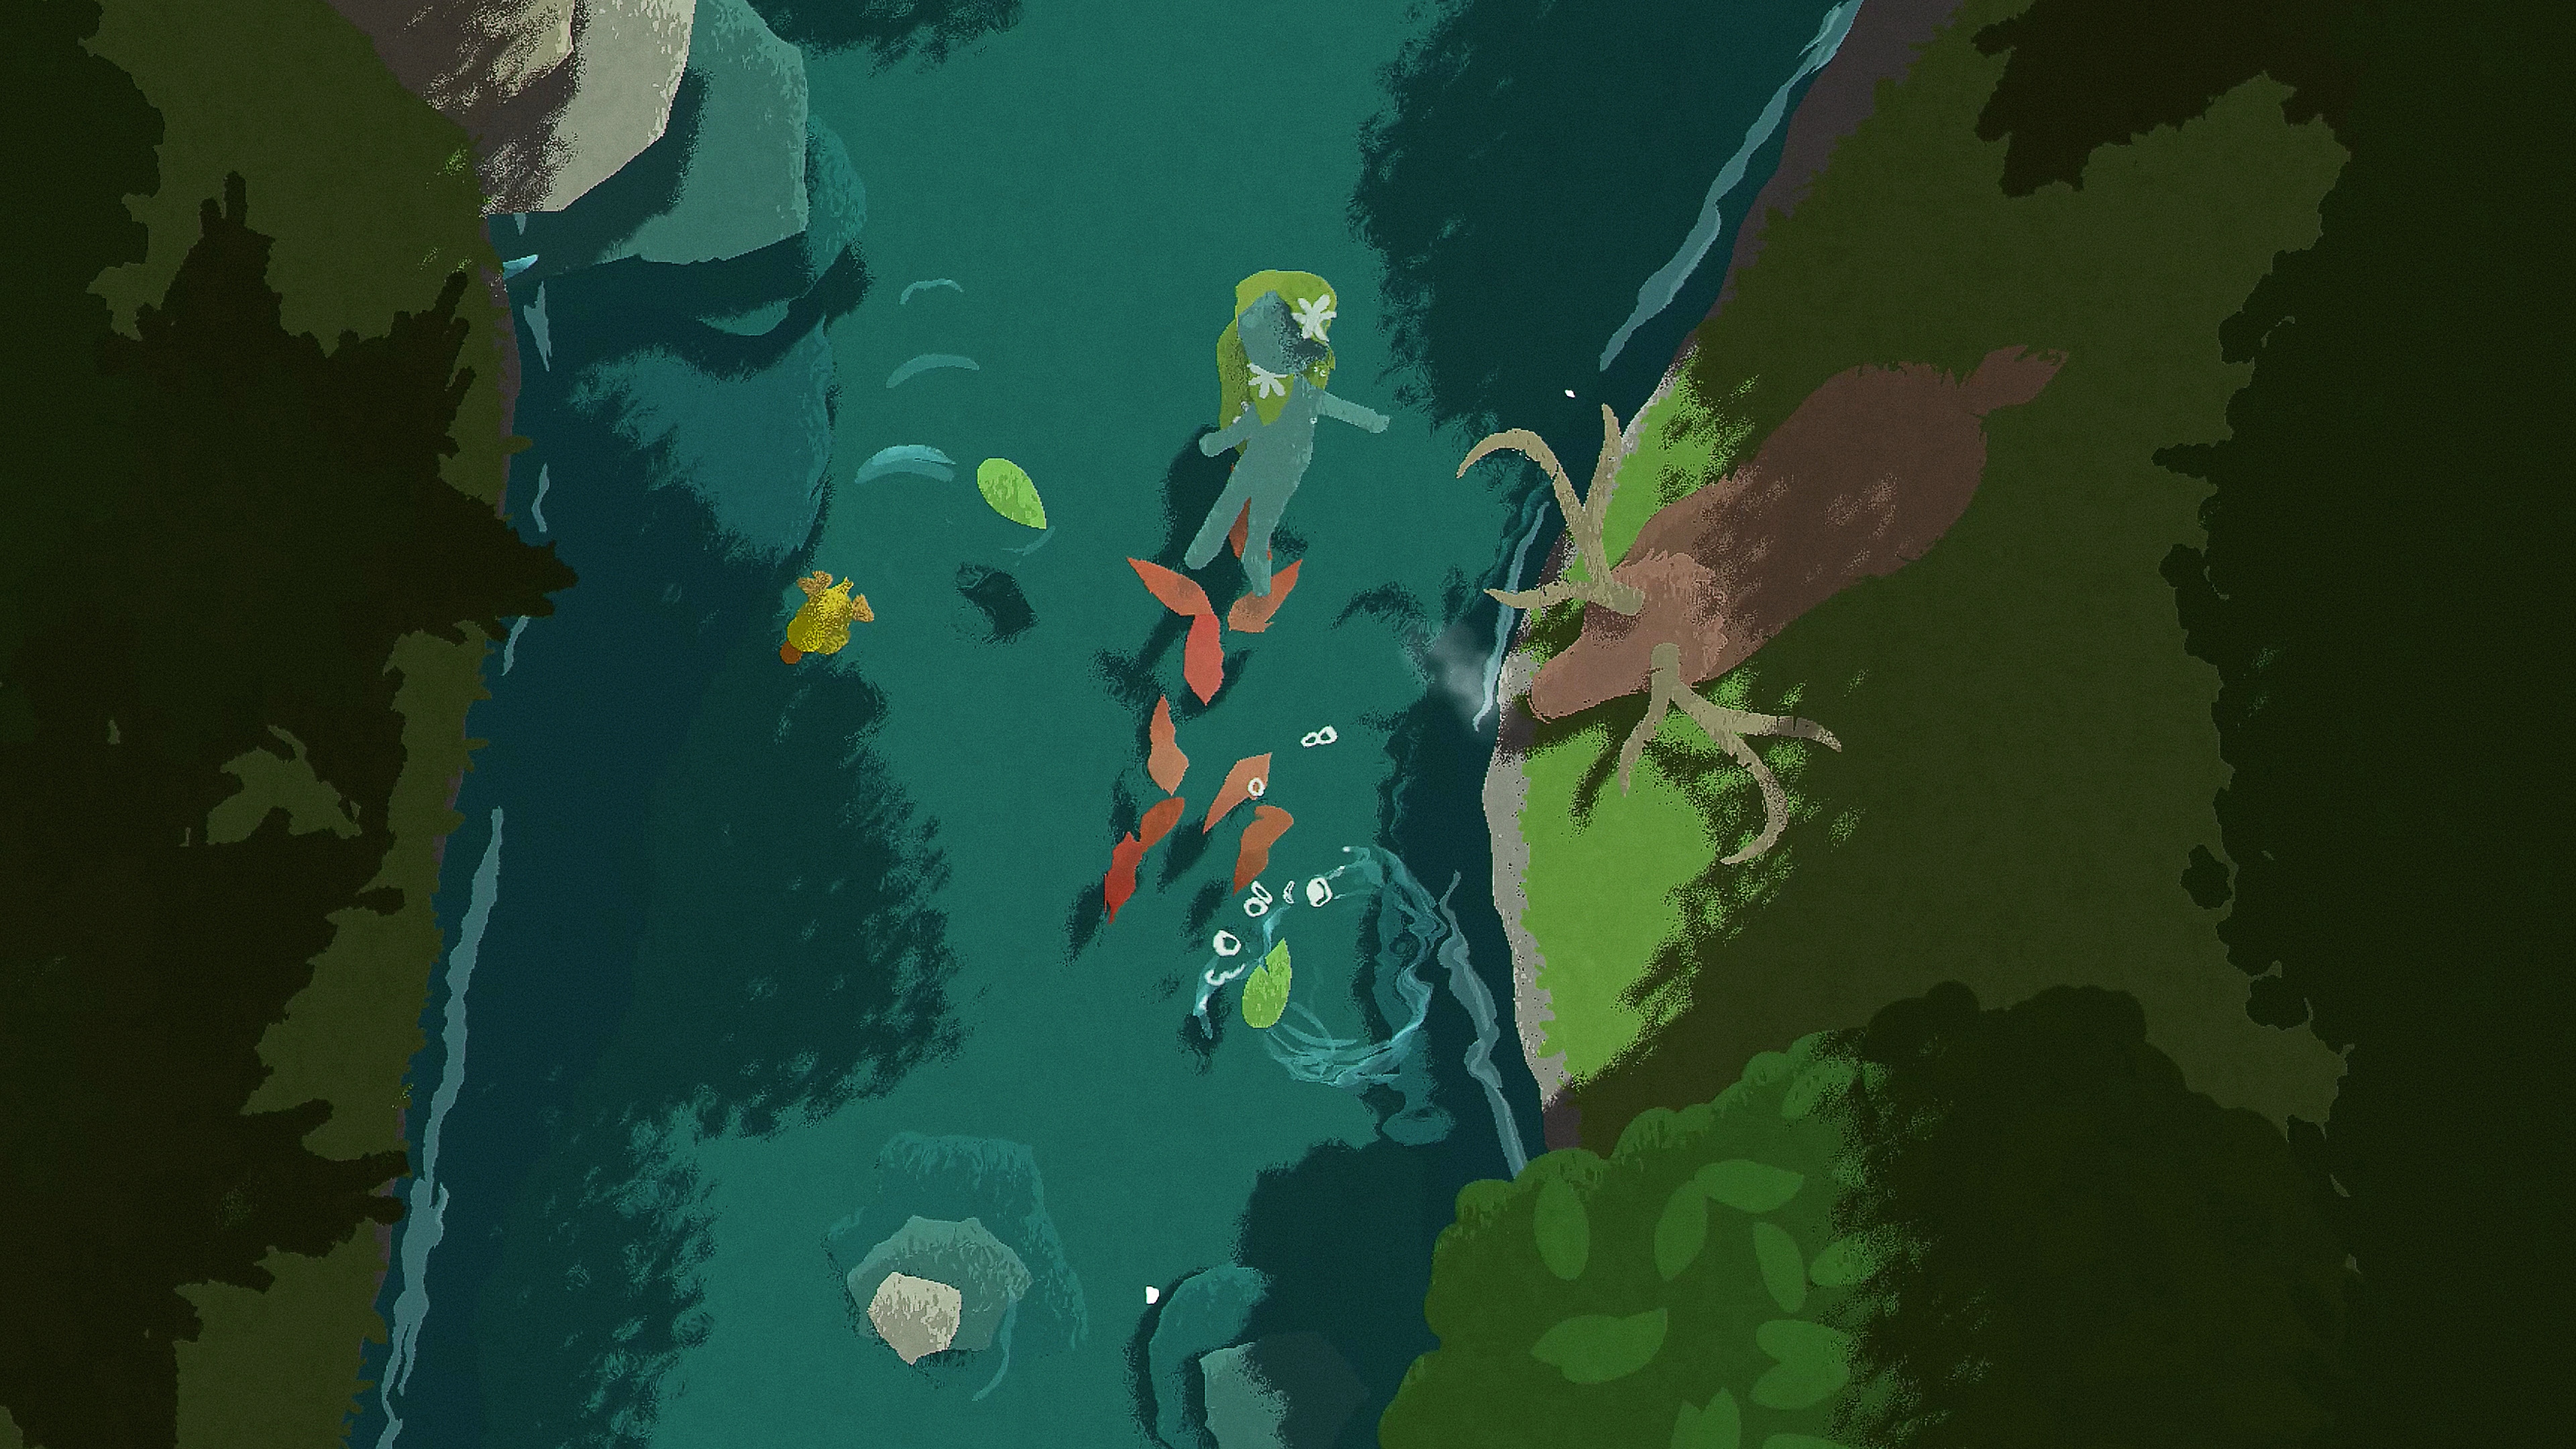 لقطة شاشة من لعبة Naiad تظهر فيها شخصية تسبح في أعماق النهر بينما تقف غزالة على ضفة النهر